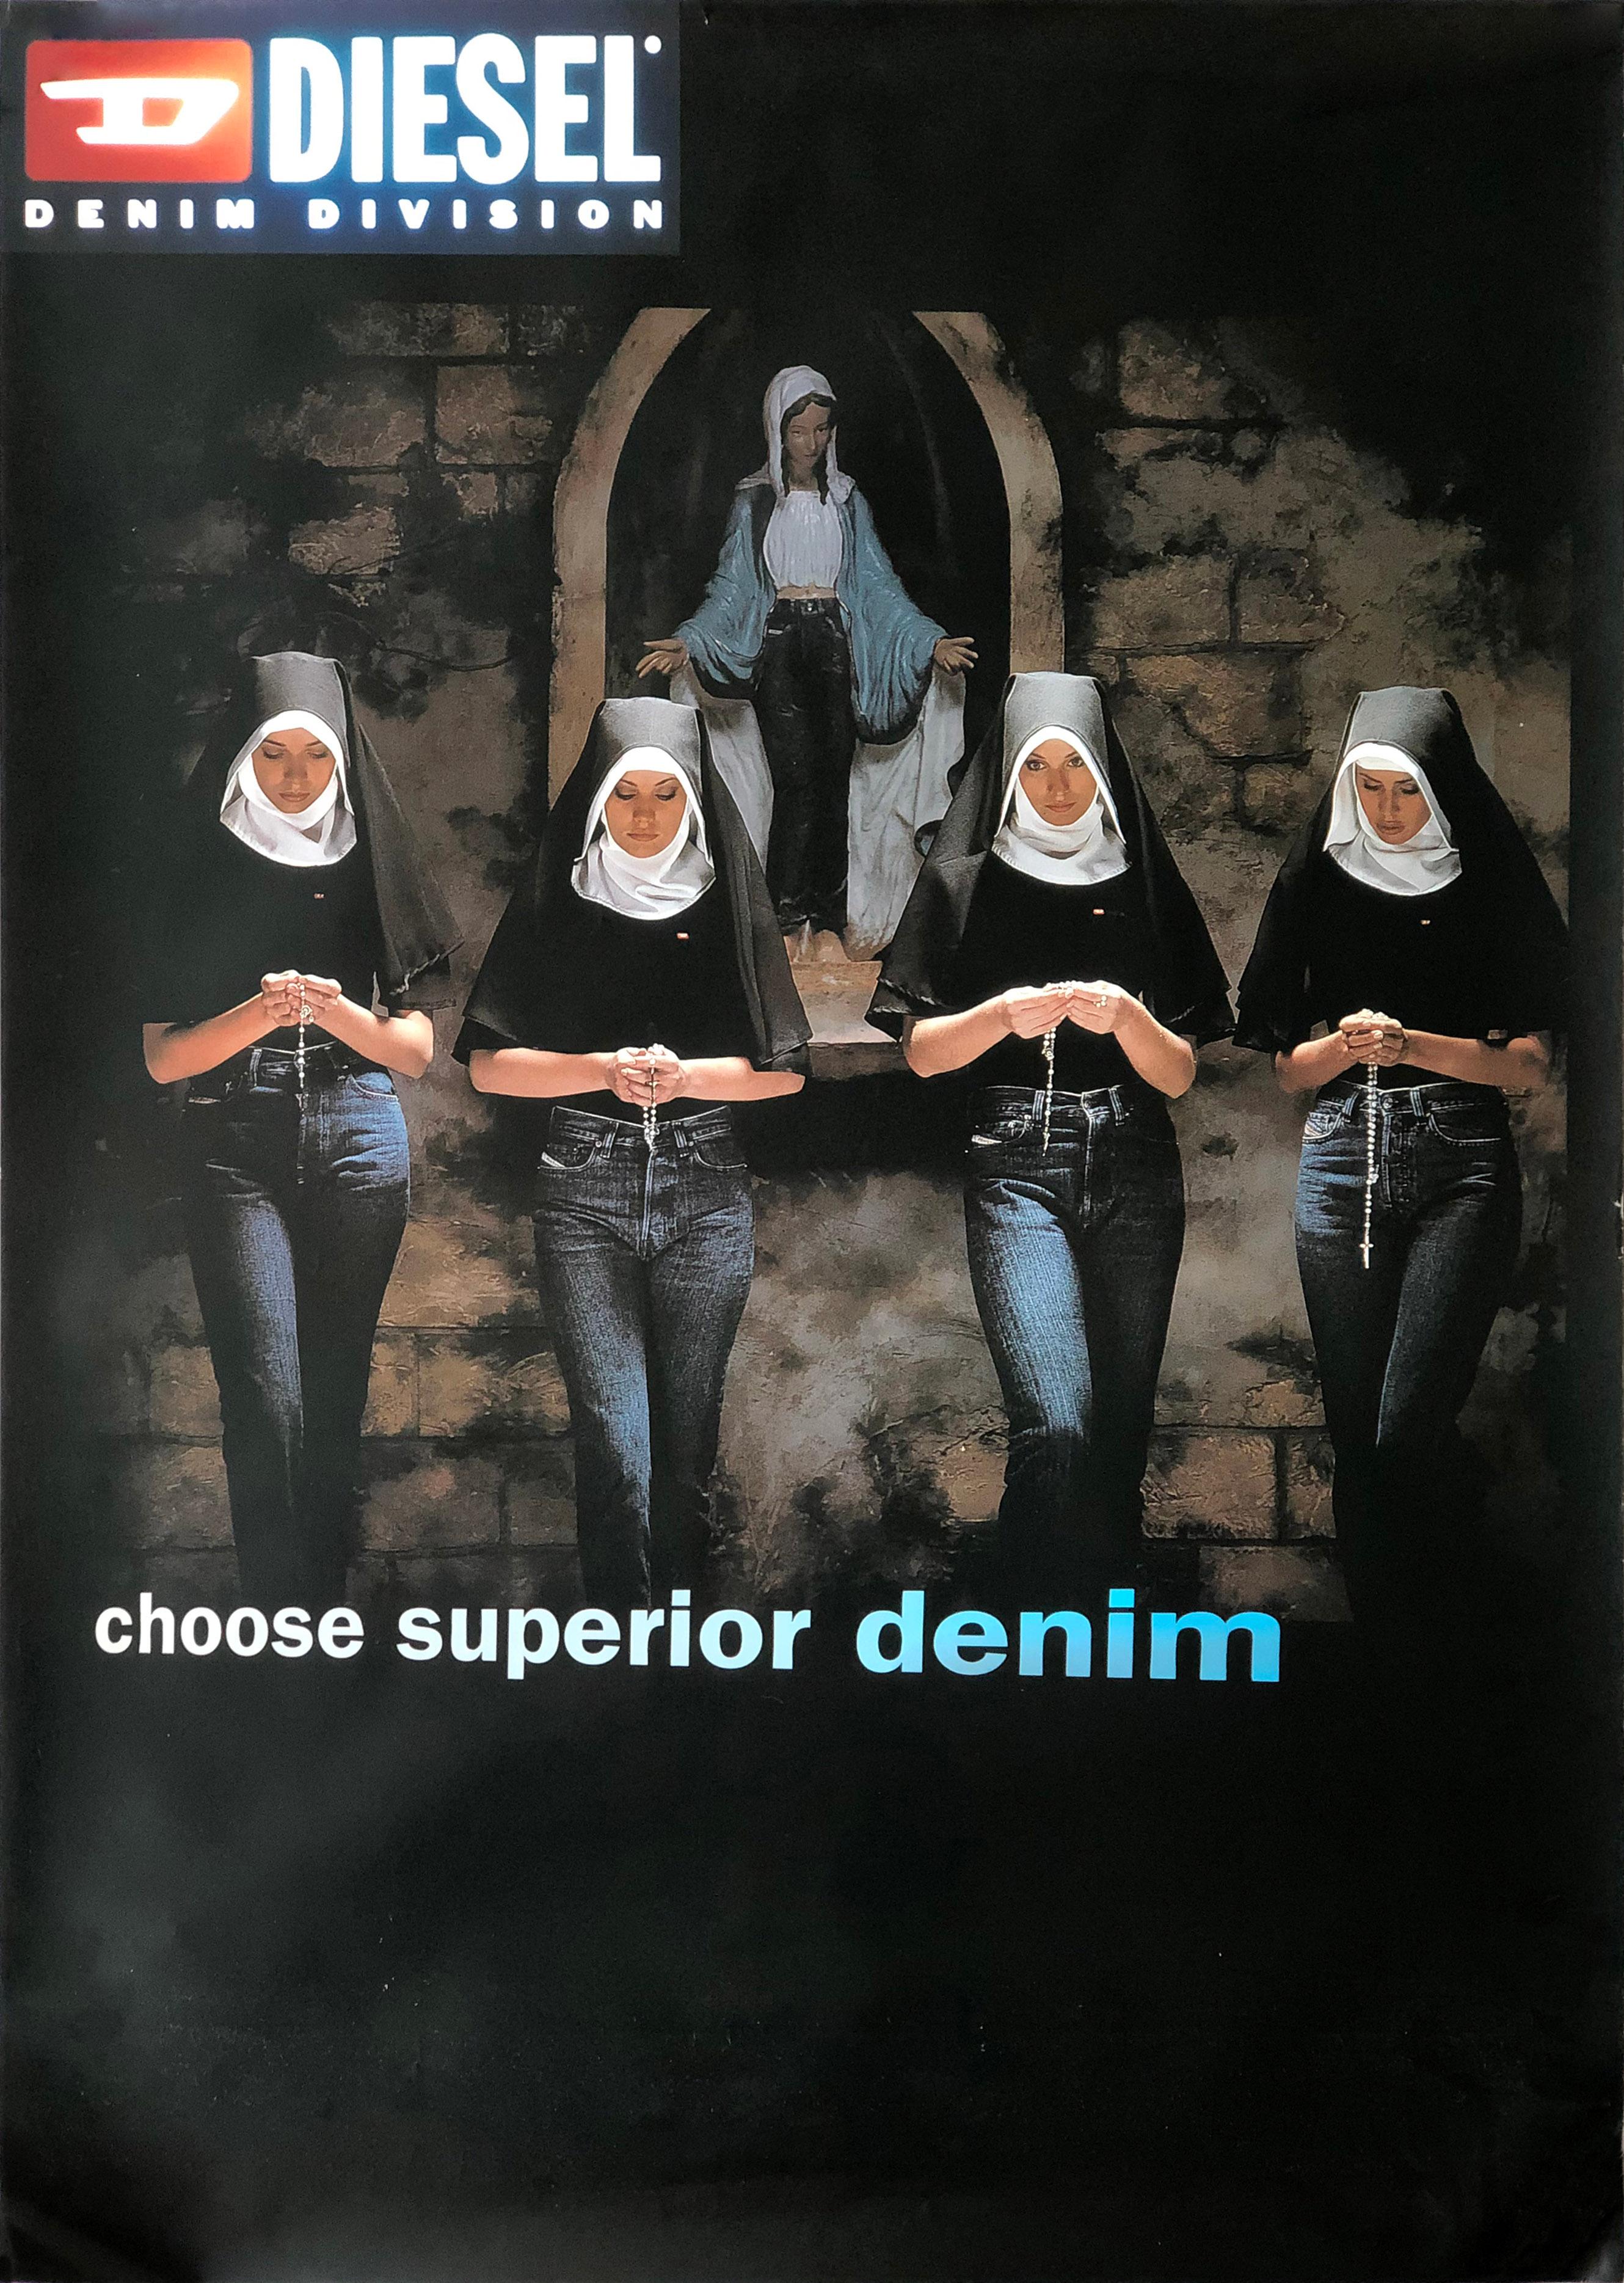 Erwin Olaf - Fashion Victims - 1998 Diesel (DSL) Dirty Denim - Affiche originale
Un groupe de jeunes religieuses en prière, vêtues de jeans/denim Diesel.
Dimensions 70 x 100 cm

A l'époque, campagne controversée pour Diesel Denim par Erwin